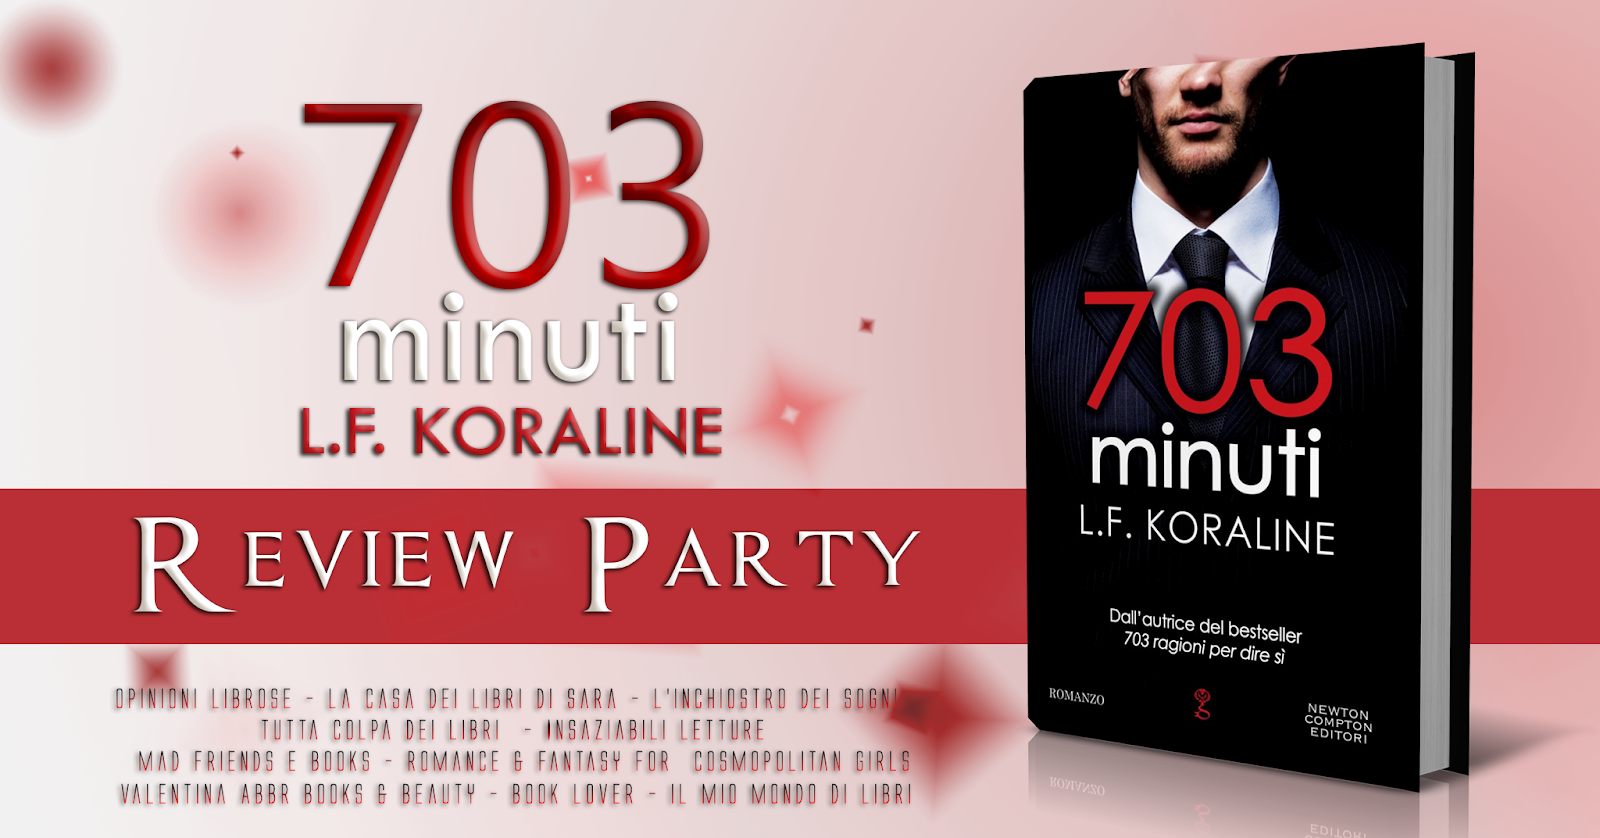 Tutta Colpa Dei Libri: Review Party 703 Minuti di Koraline LF, #4 Mr 703  series